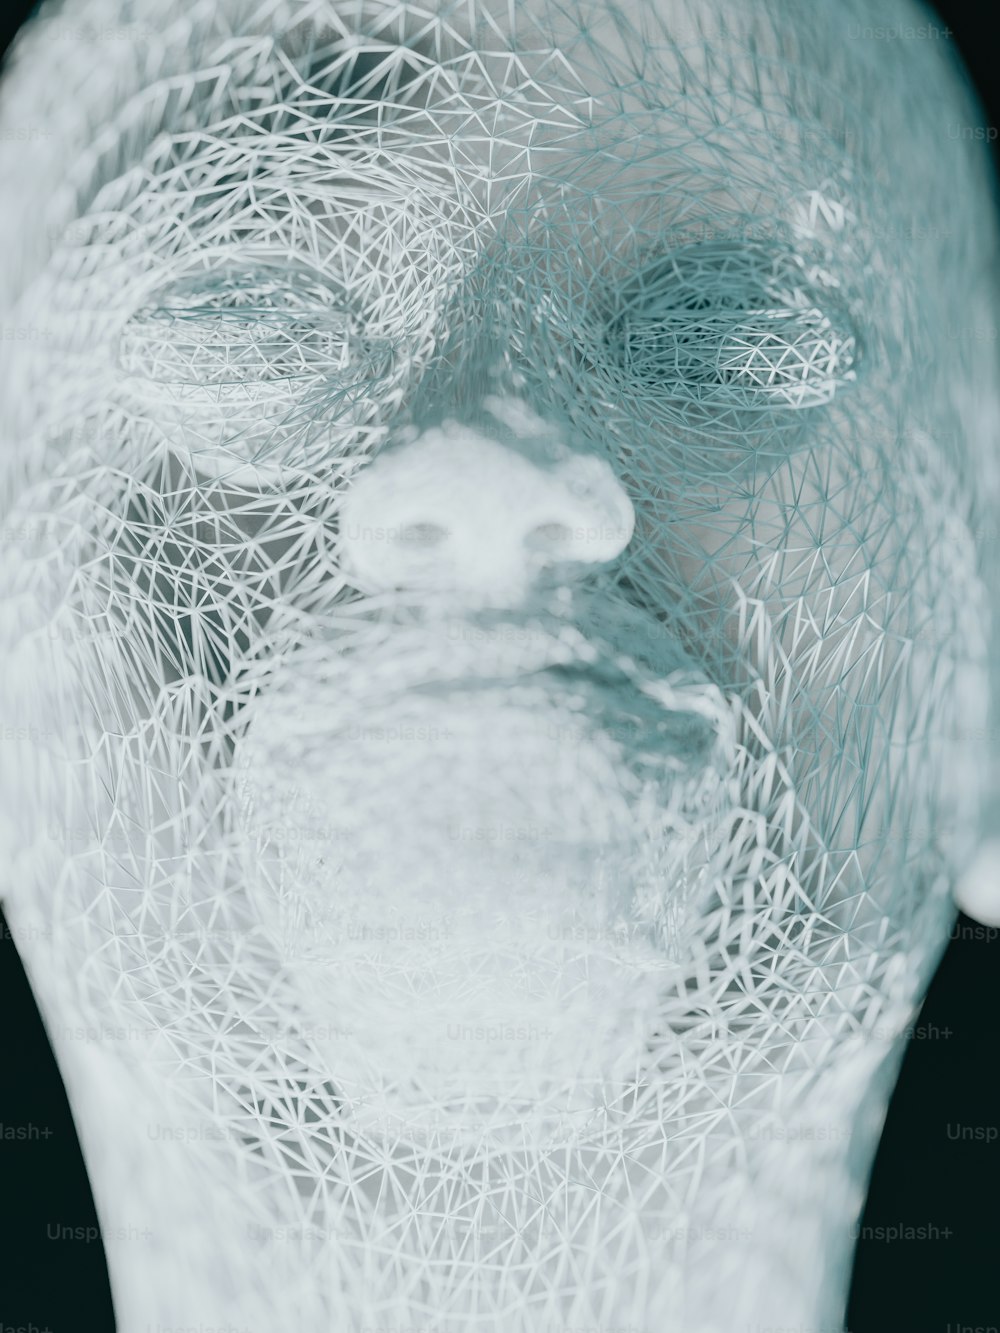 un gros plan du visage d’une personne fait de fil de fer